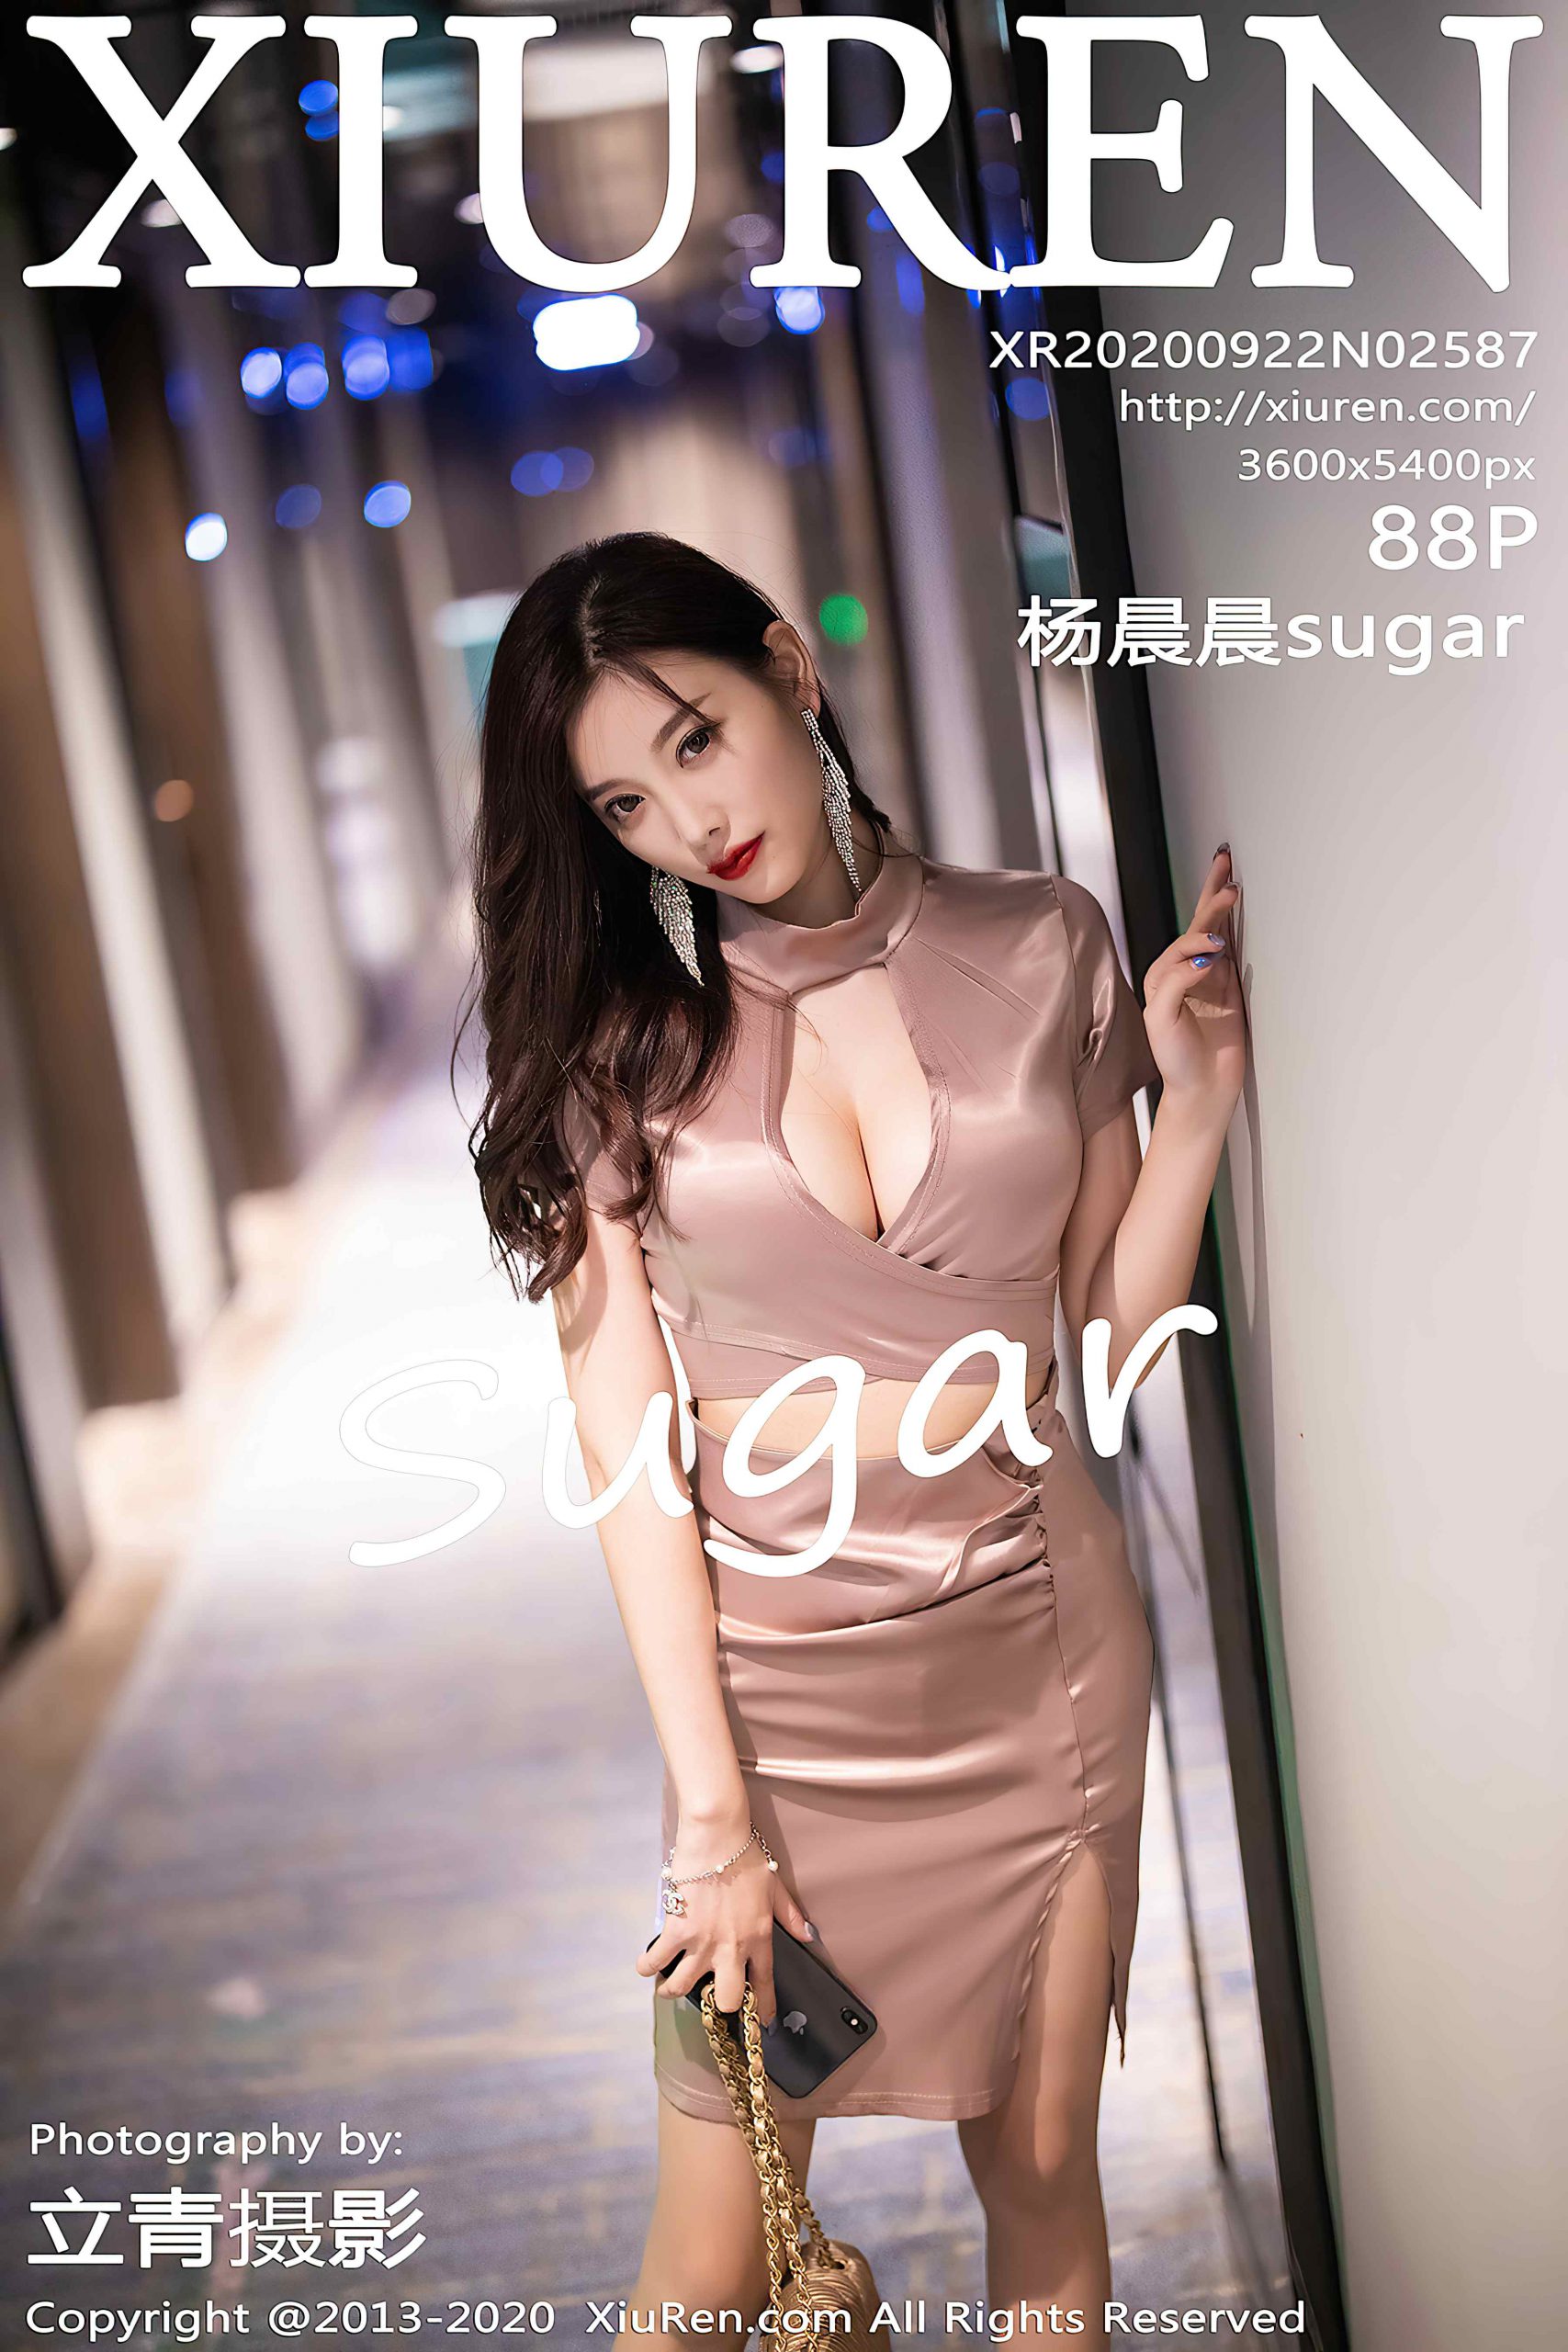 [XiuRen秀人网] 2020.09.22 No.2587 杨晨晨sugar[88P/789M]